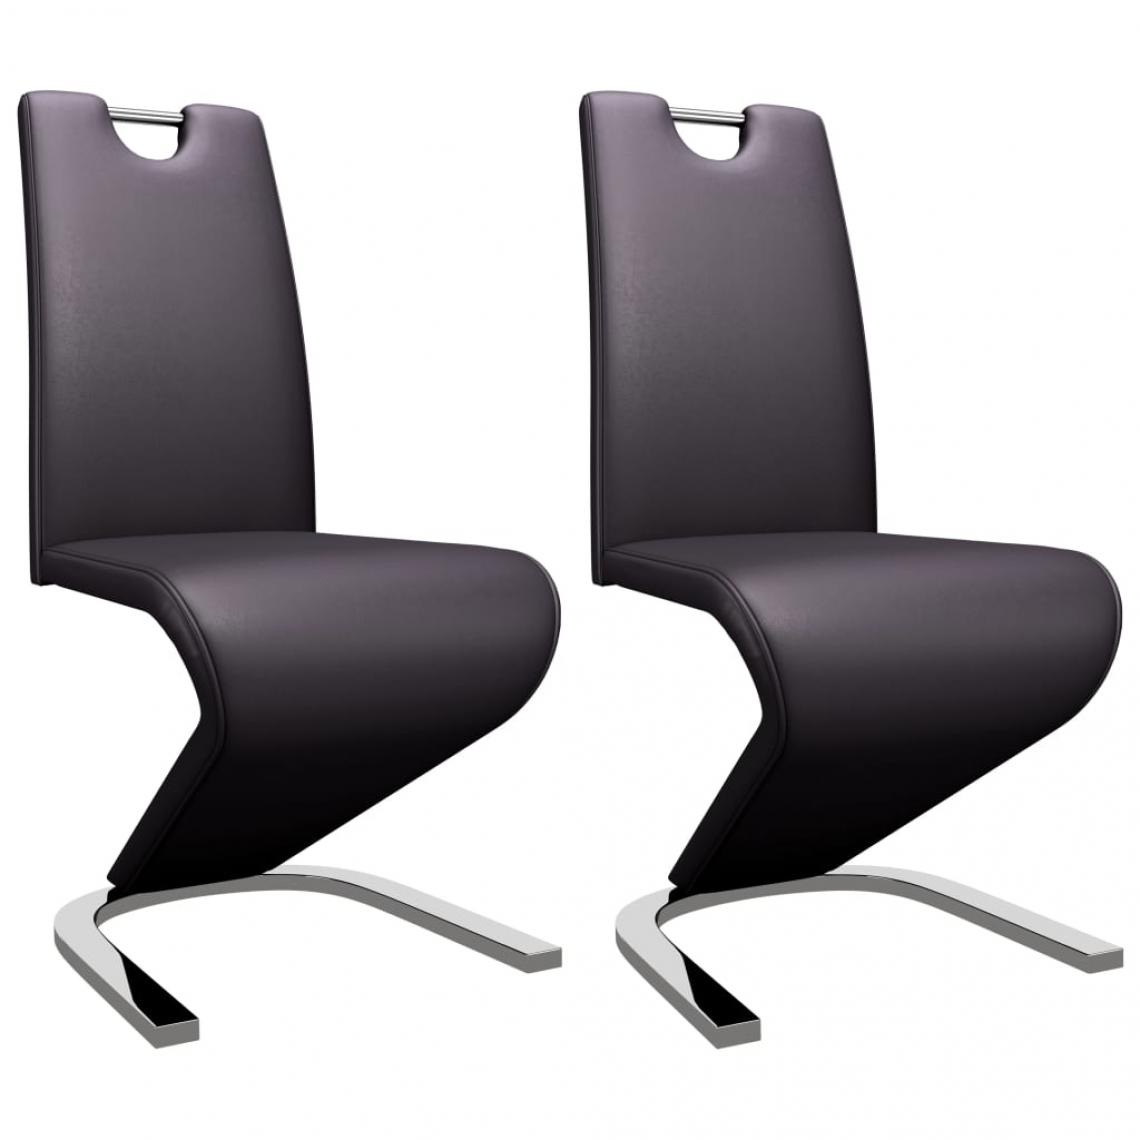 Decoshop26 - Lot de 2 chaises de salle à manger cuisine zigzag design moderne similicuir marron CDS021159 - Chaises